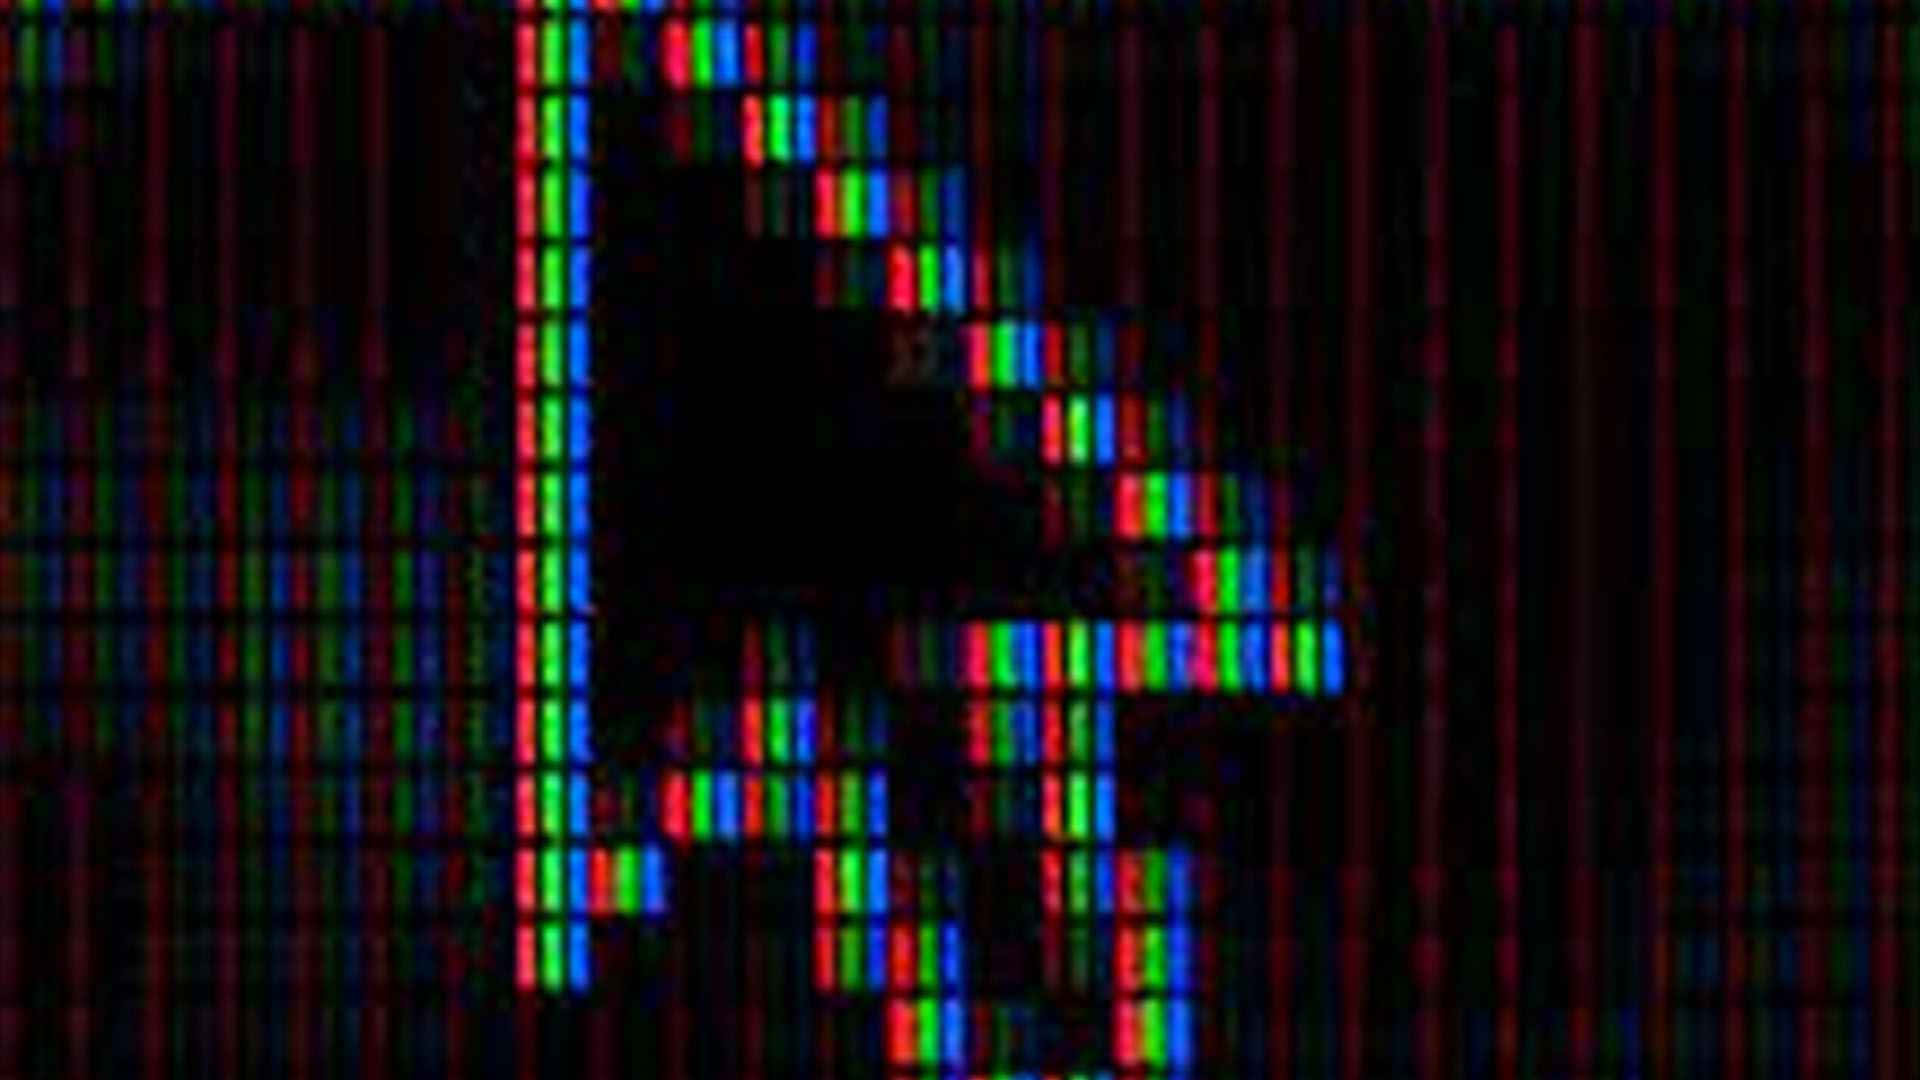 Pixeldygtige billeder med scene af små, vandrette linjer.